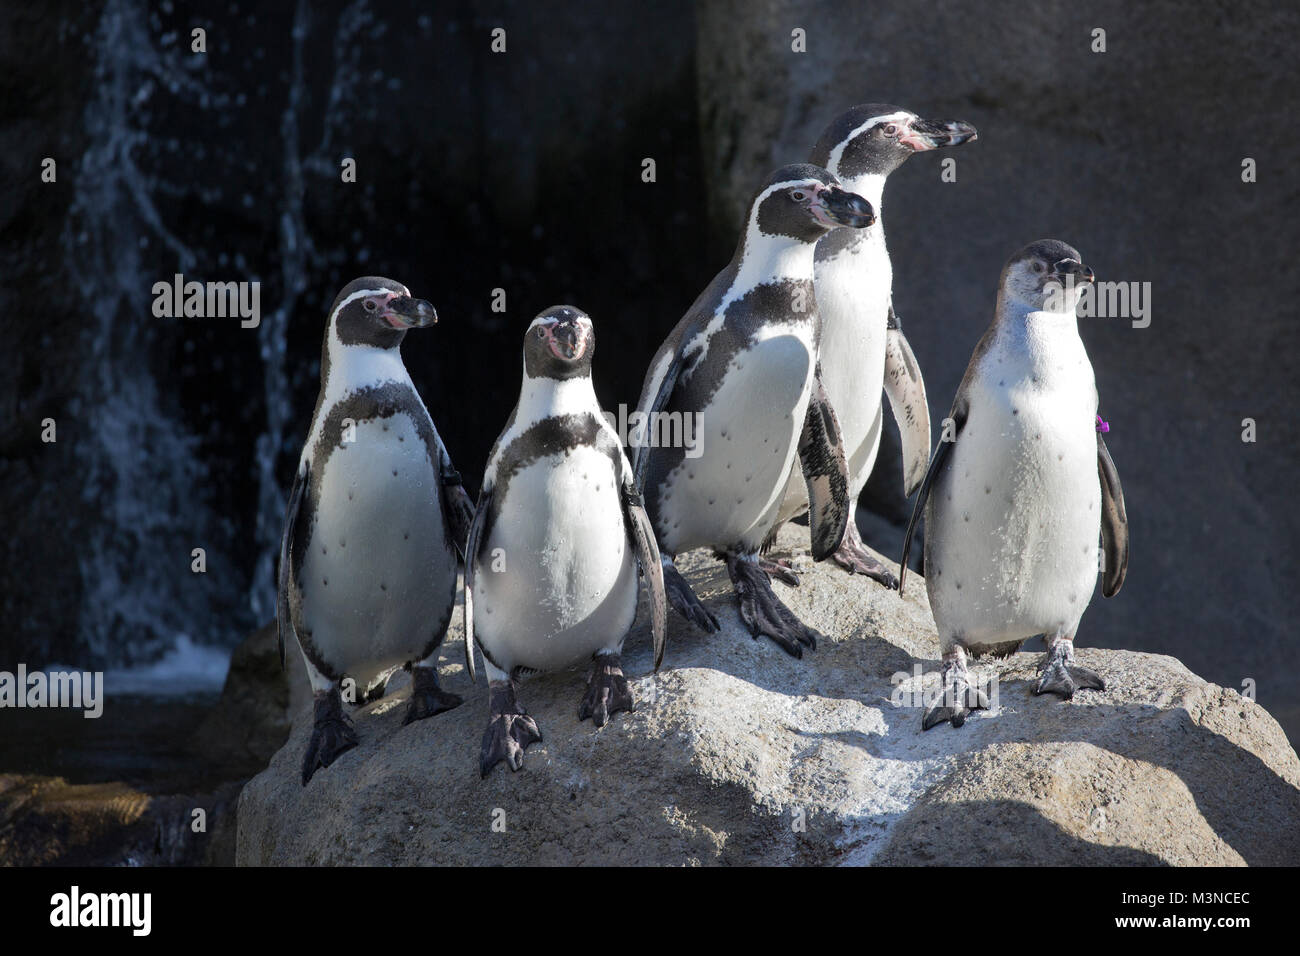 Humboldt-Pinguine sonnen sich auf einem Felsen in einem Zoolebensraum (Spheniscus humboldti) Stockfoto